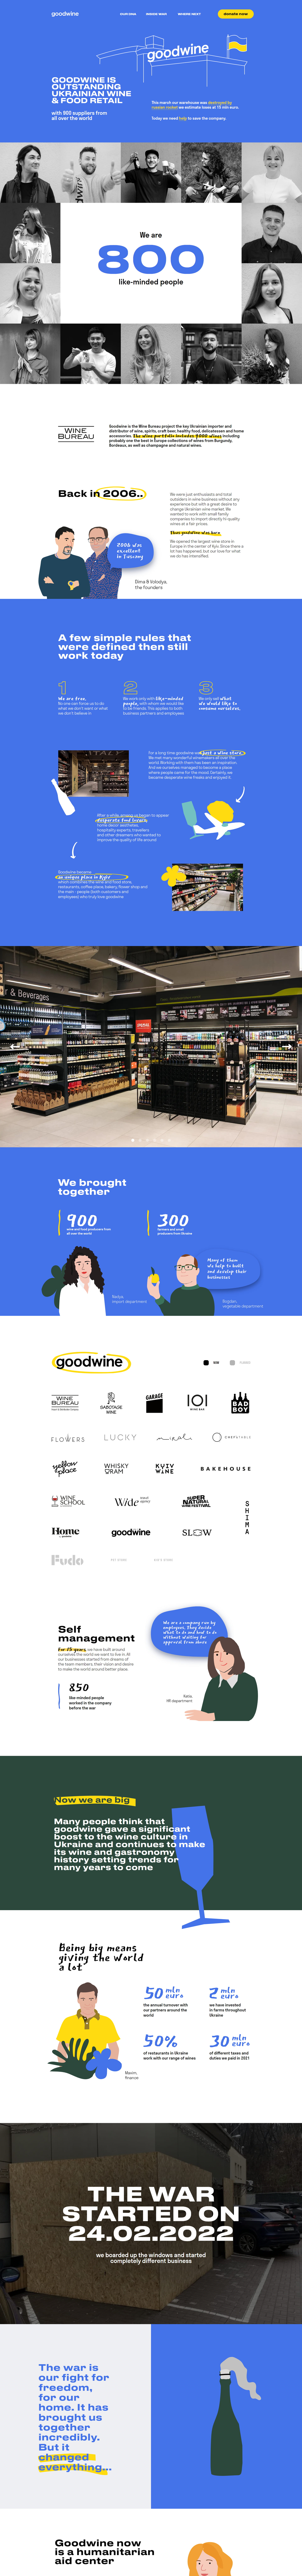 GOODWINE — украинский винный и продуктовый ритейл0